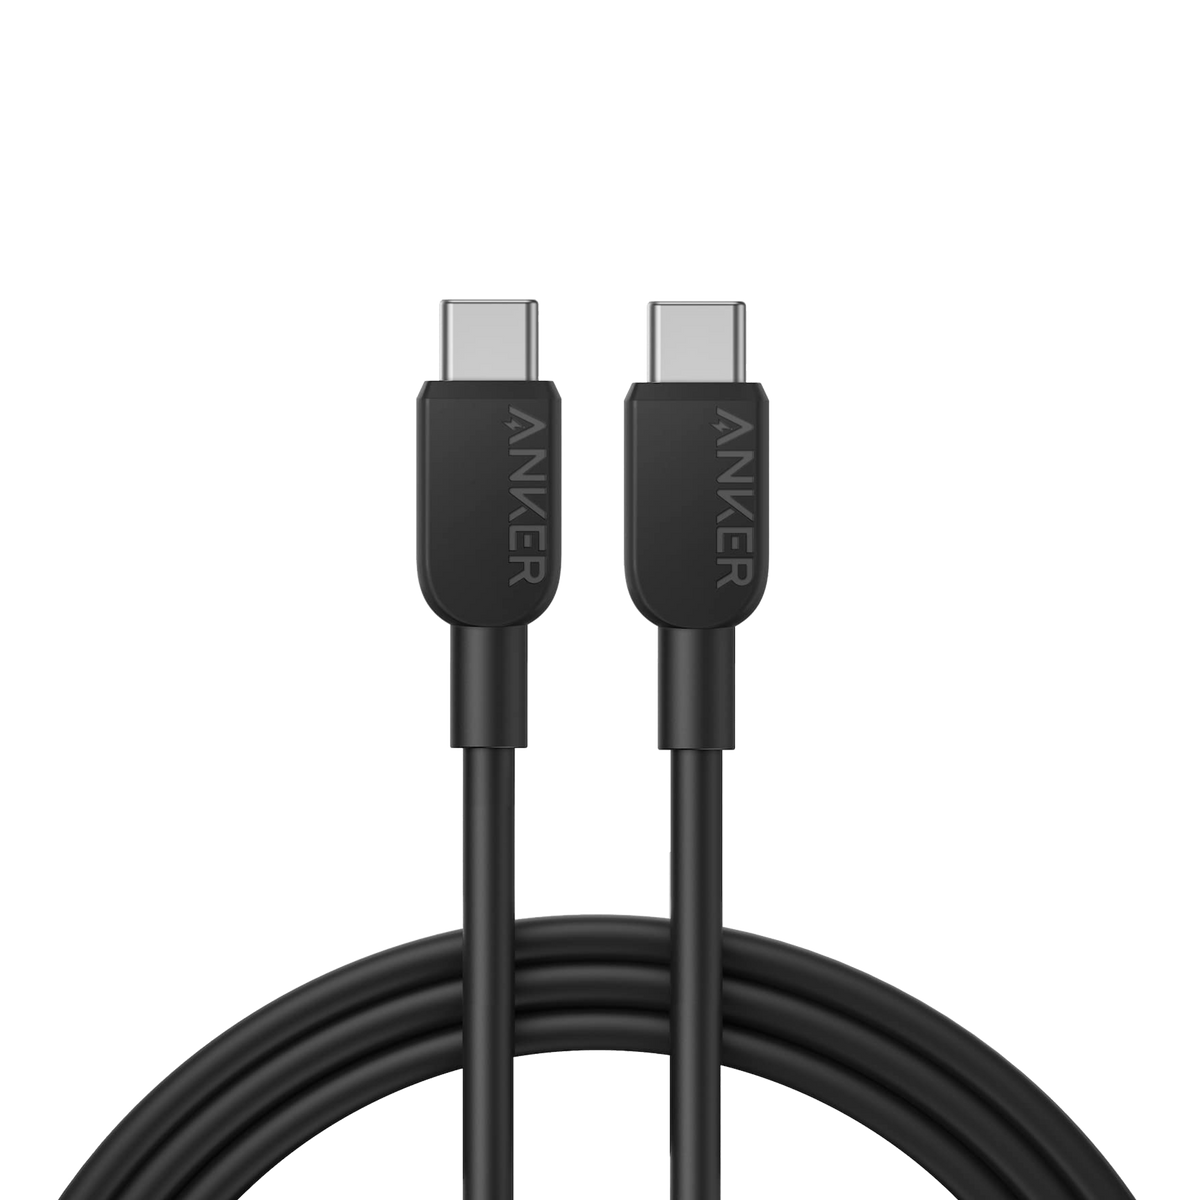 Anker &lt;b&gt;310&lt;/b&gt; USB C to USB C Cable (6 ft)